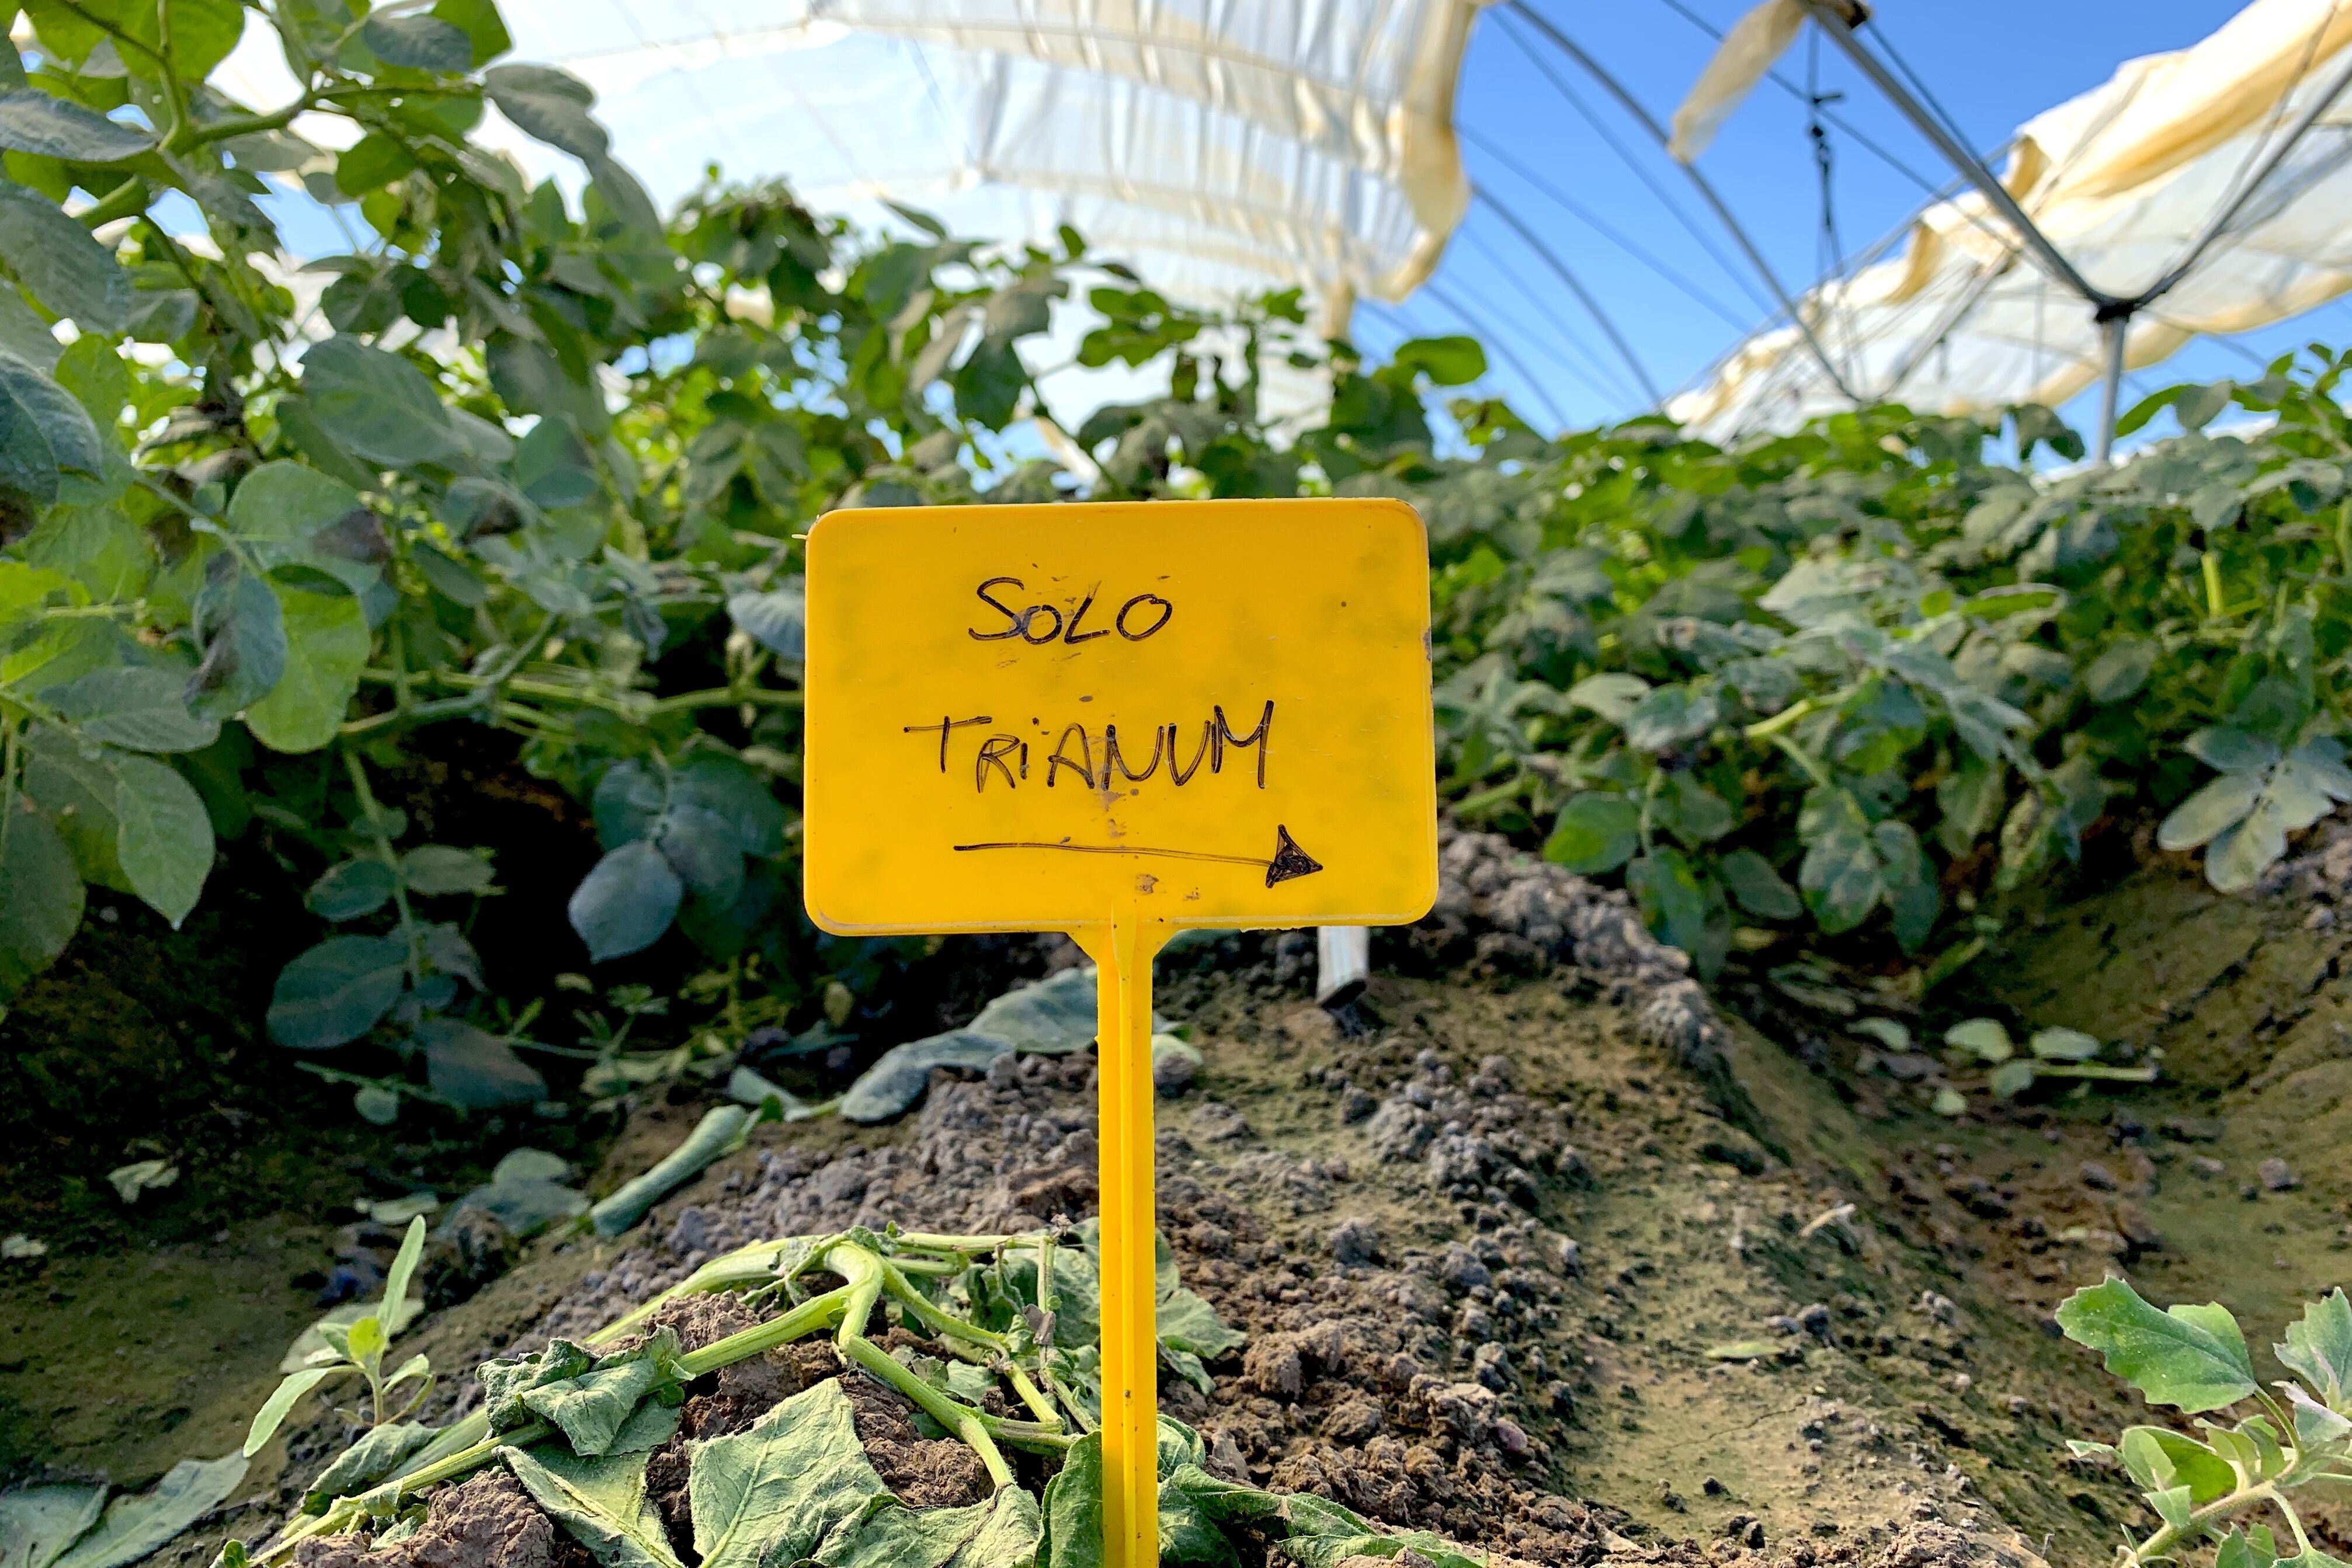 Cartel que señala el uso de Trianum en un cultivo de patata en Sevilla.